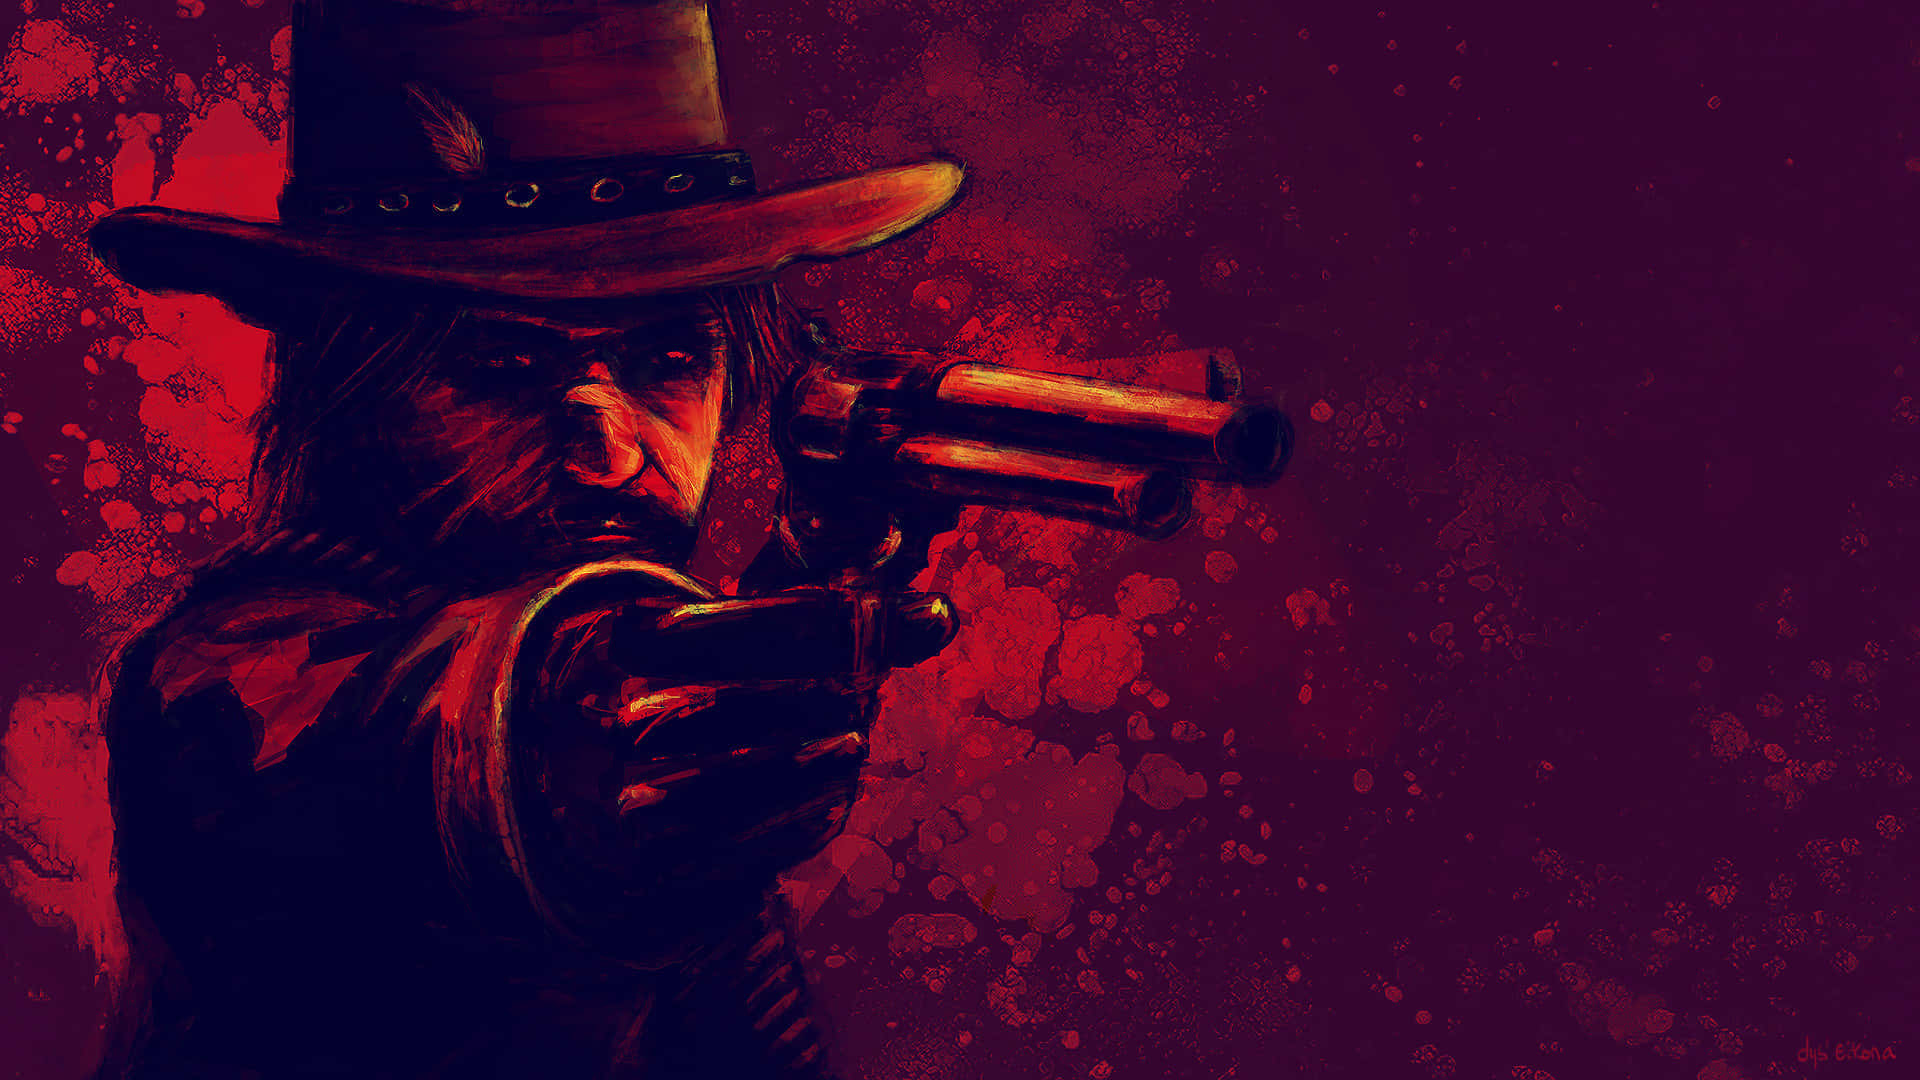 Elmejor Fondo De Pantalla De Red Dead Redemption 2 Con John Marston Apuntando Un Arma.